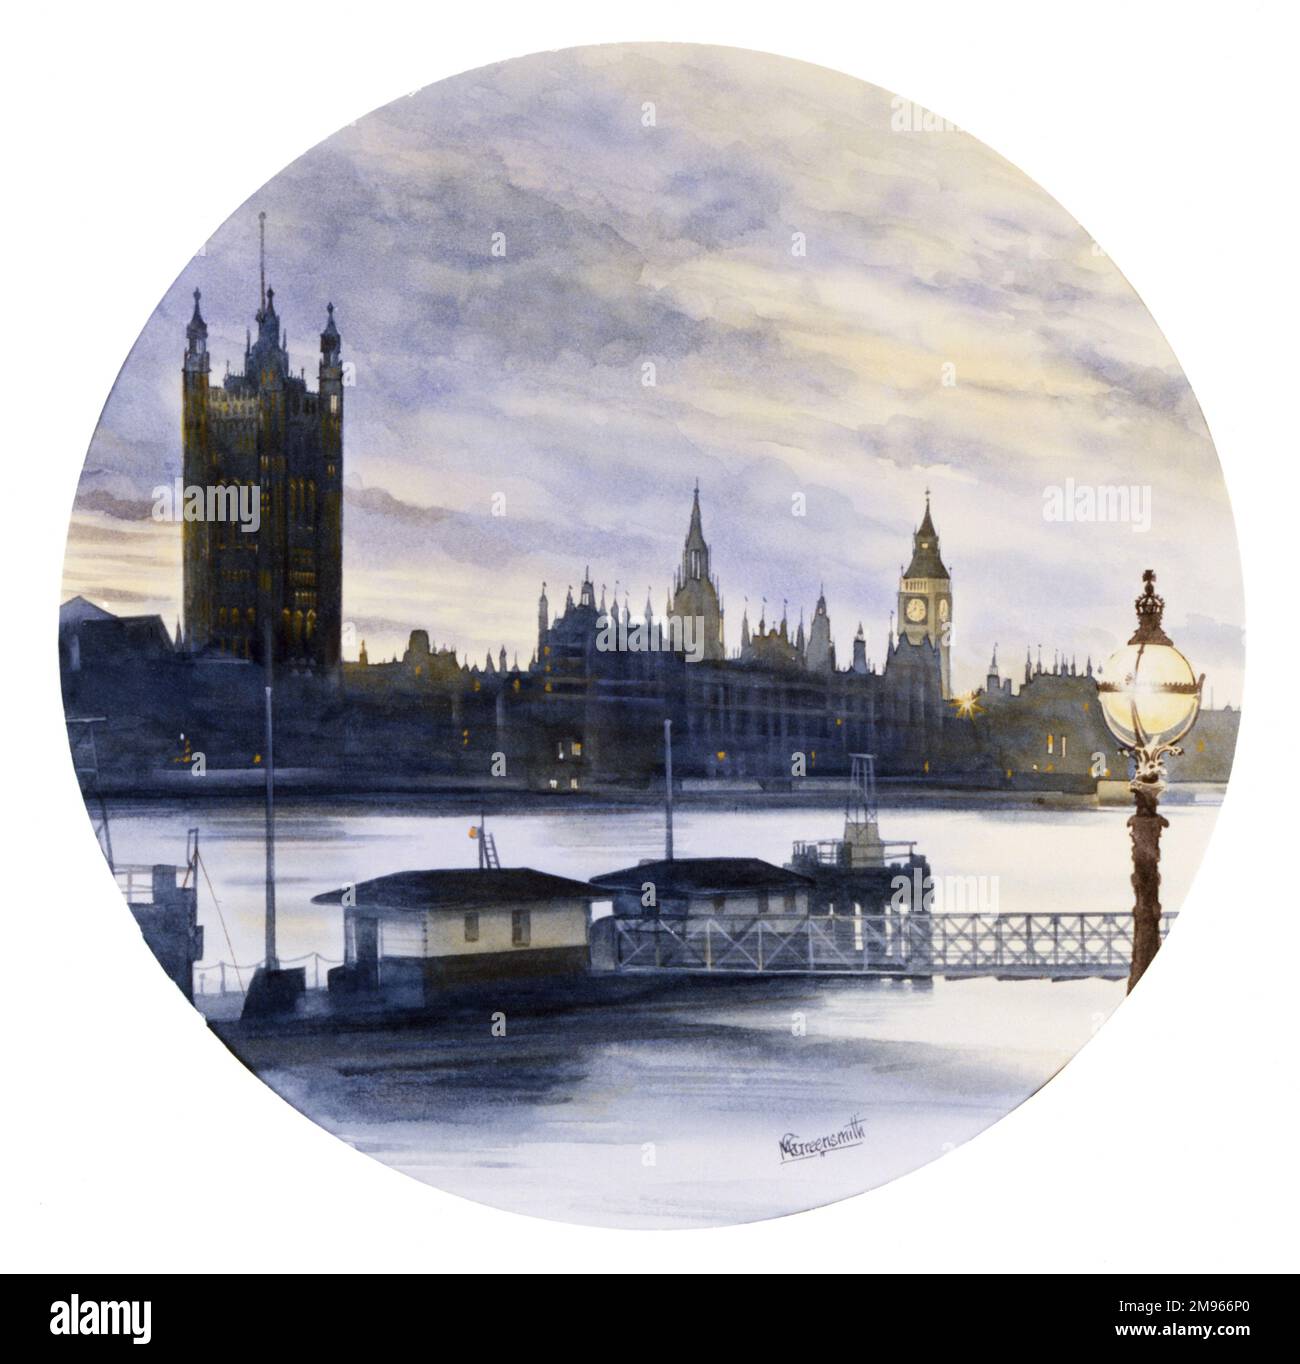 Blick auf die Houses of Parliament vom südlichen Ufer der Themse in London. Malerei von Malcolm Greensmith Stockfoto